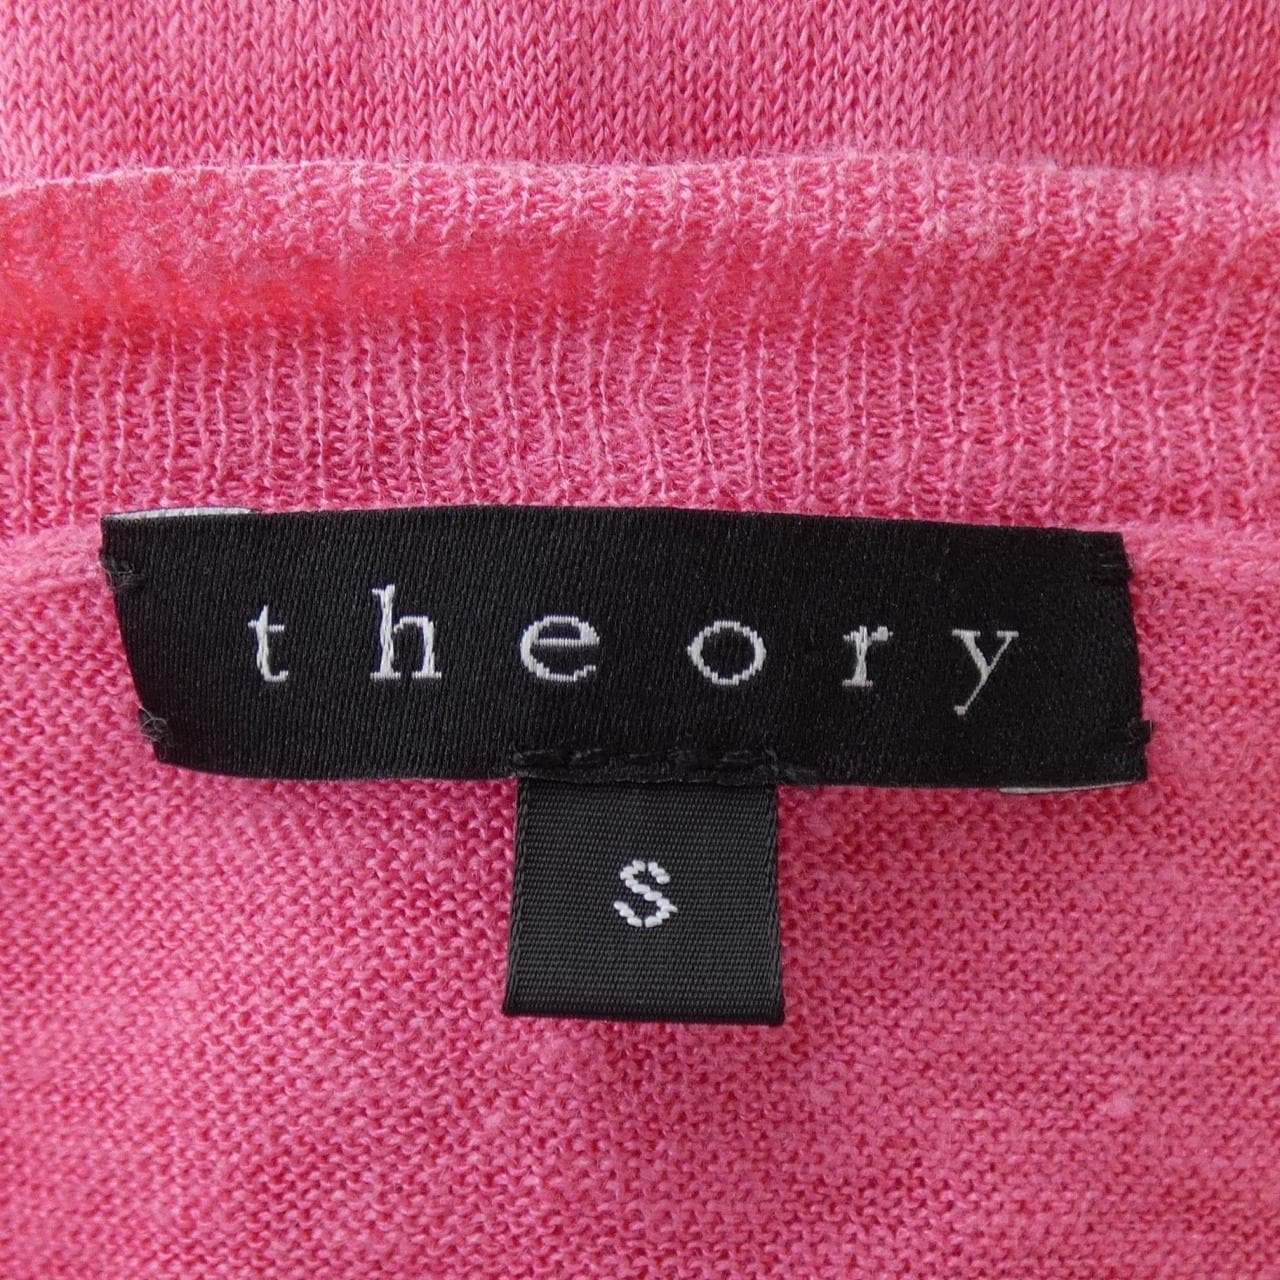 セオリー theory ニット